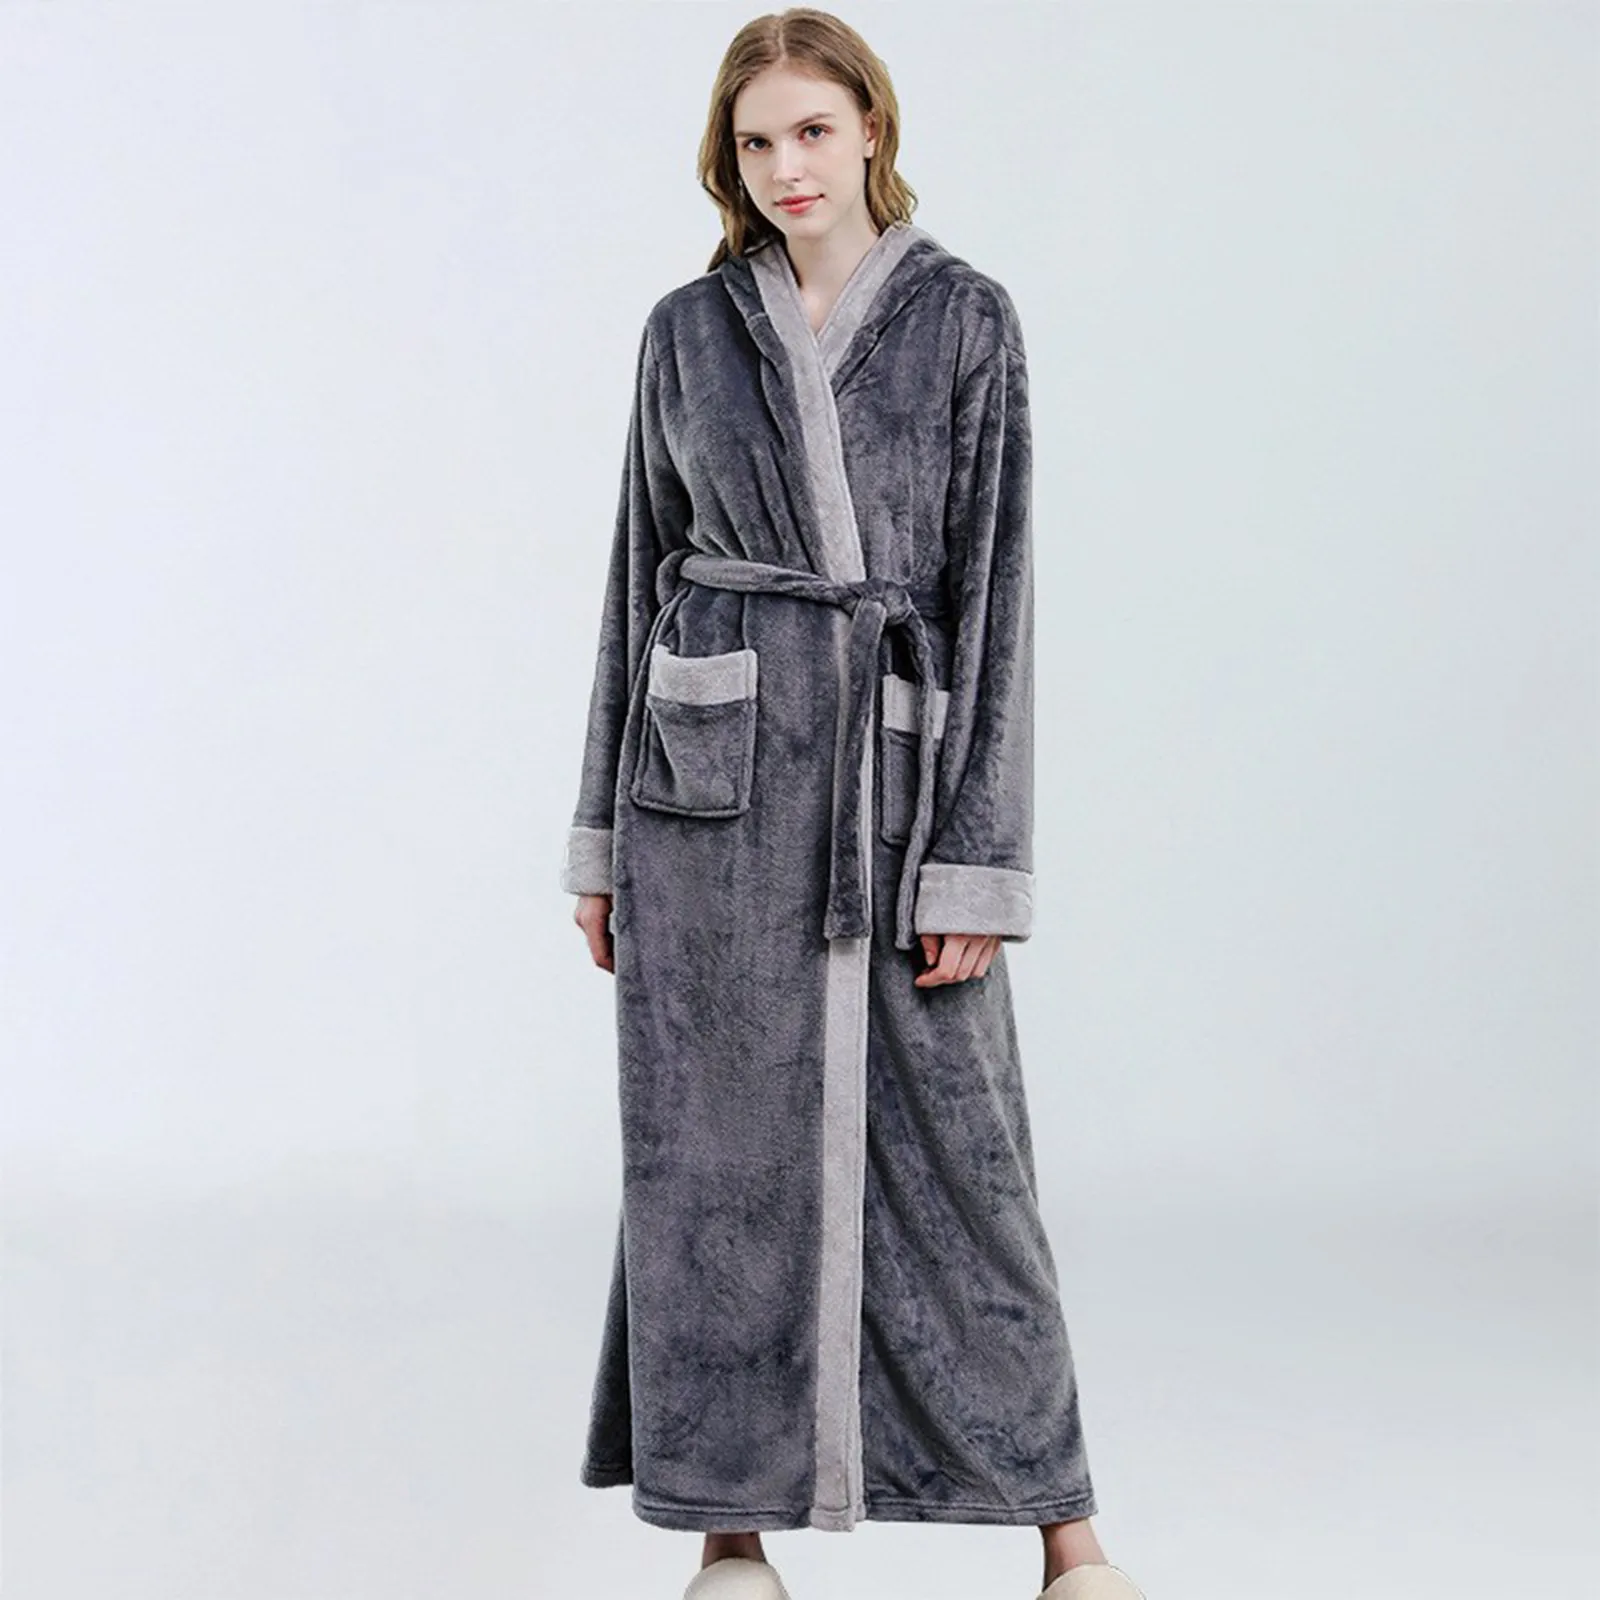 

Women's Men's Winter Warm Robes Fluffy Fleece Dressing Gown Long Sleepwear Lounge Housecoat Fuzzy Bathrobe for Hotel and Spa